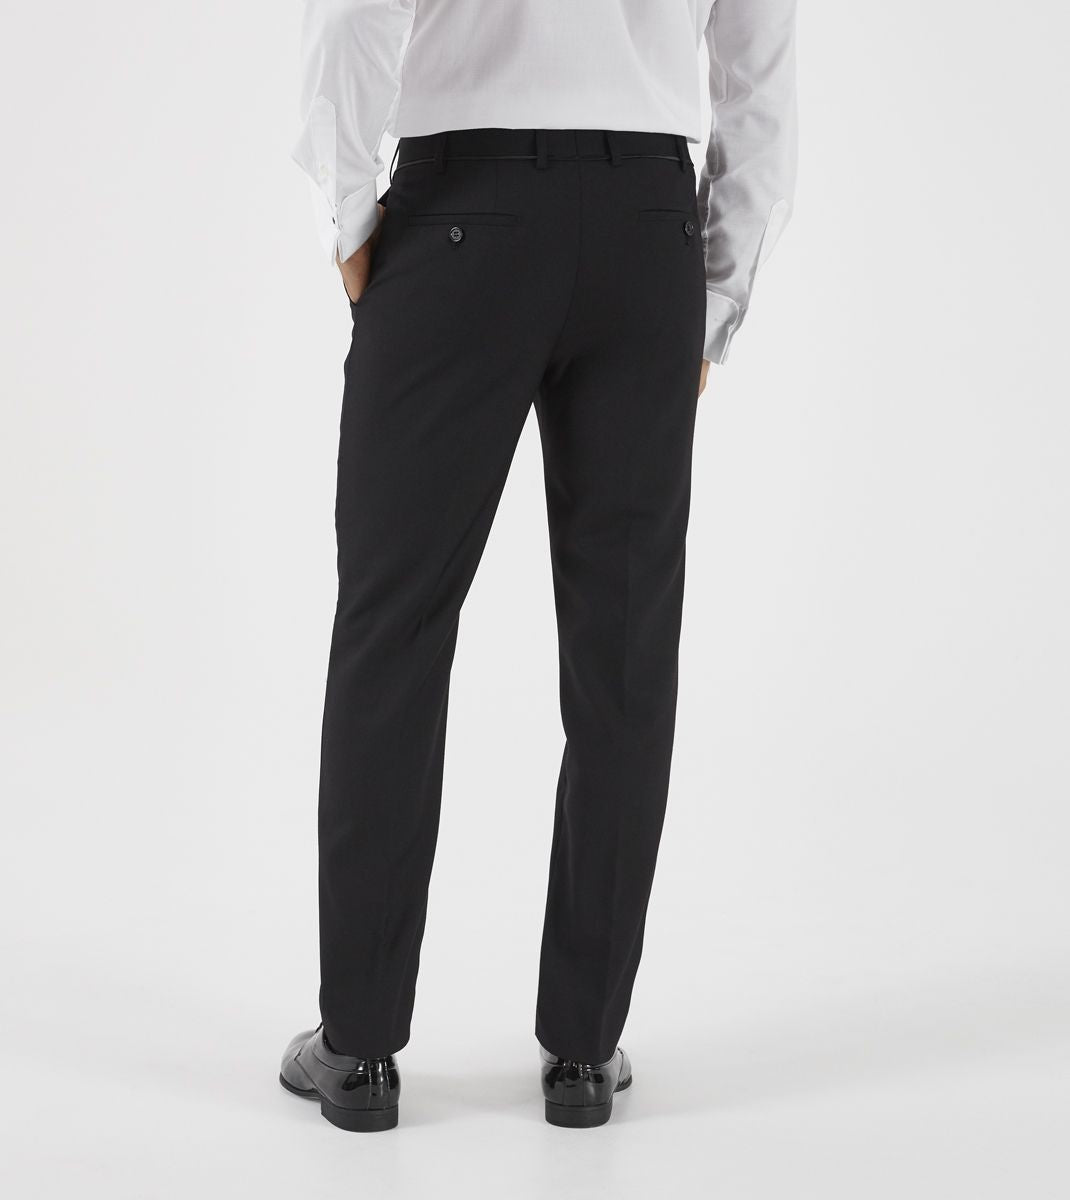 Skopes Dinner Suit Trousers Black Regular Length